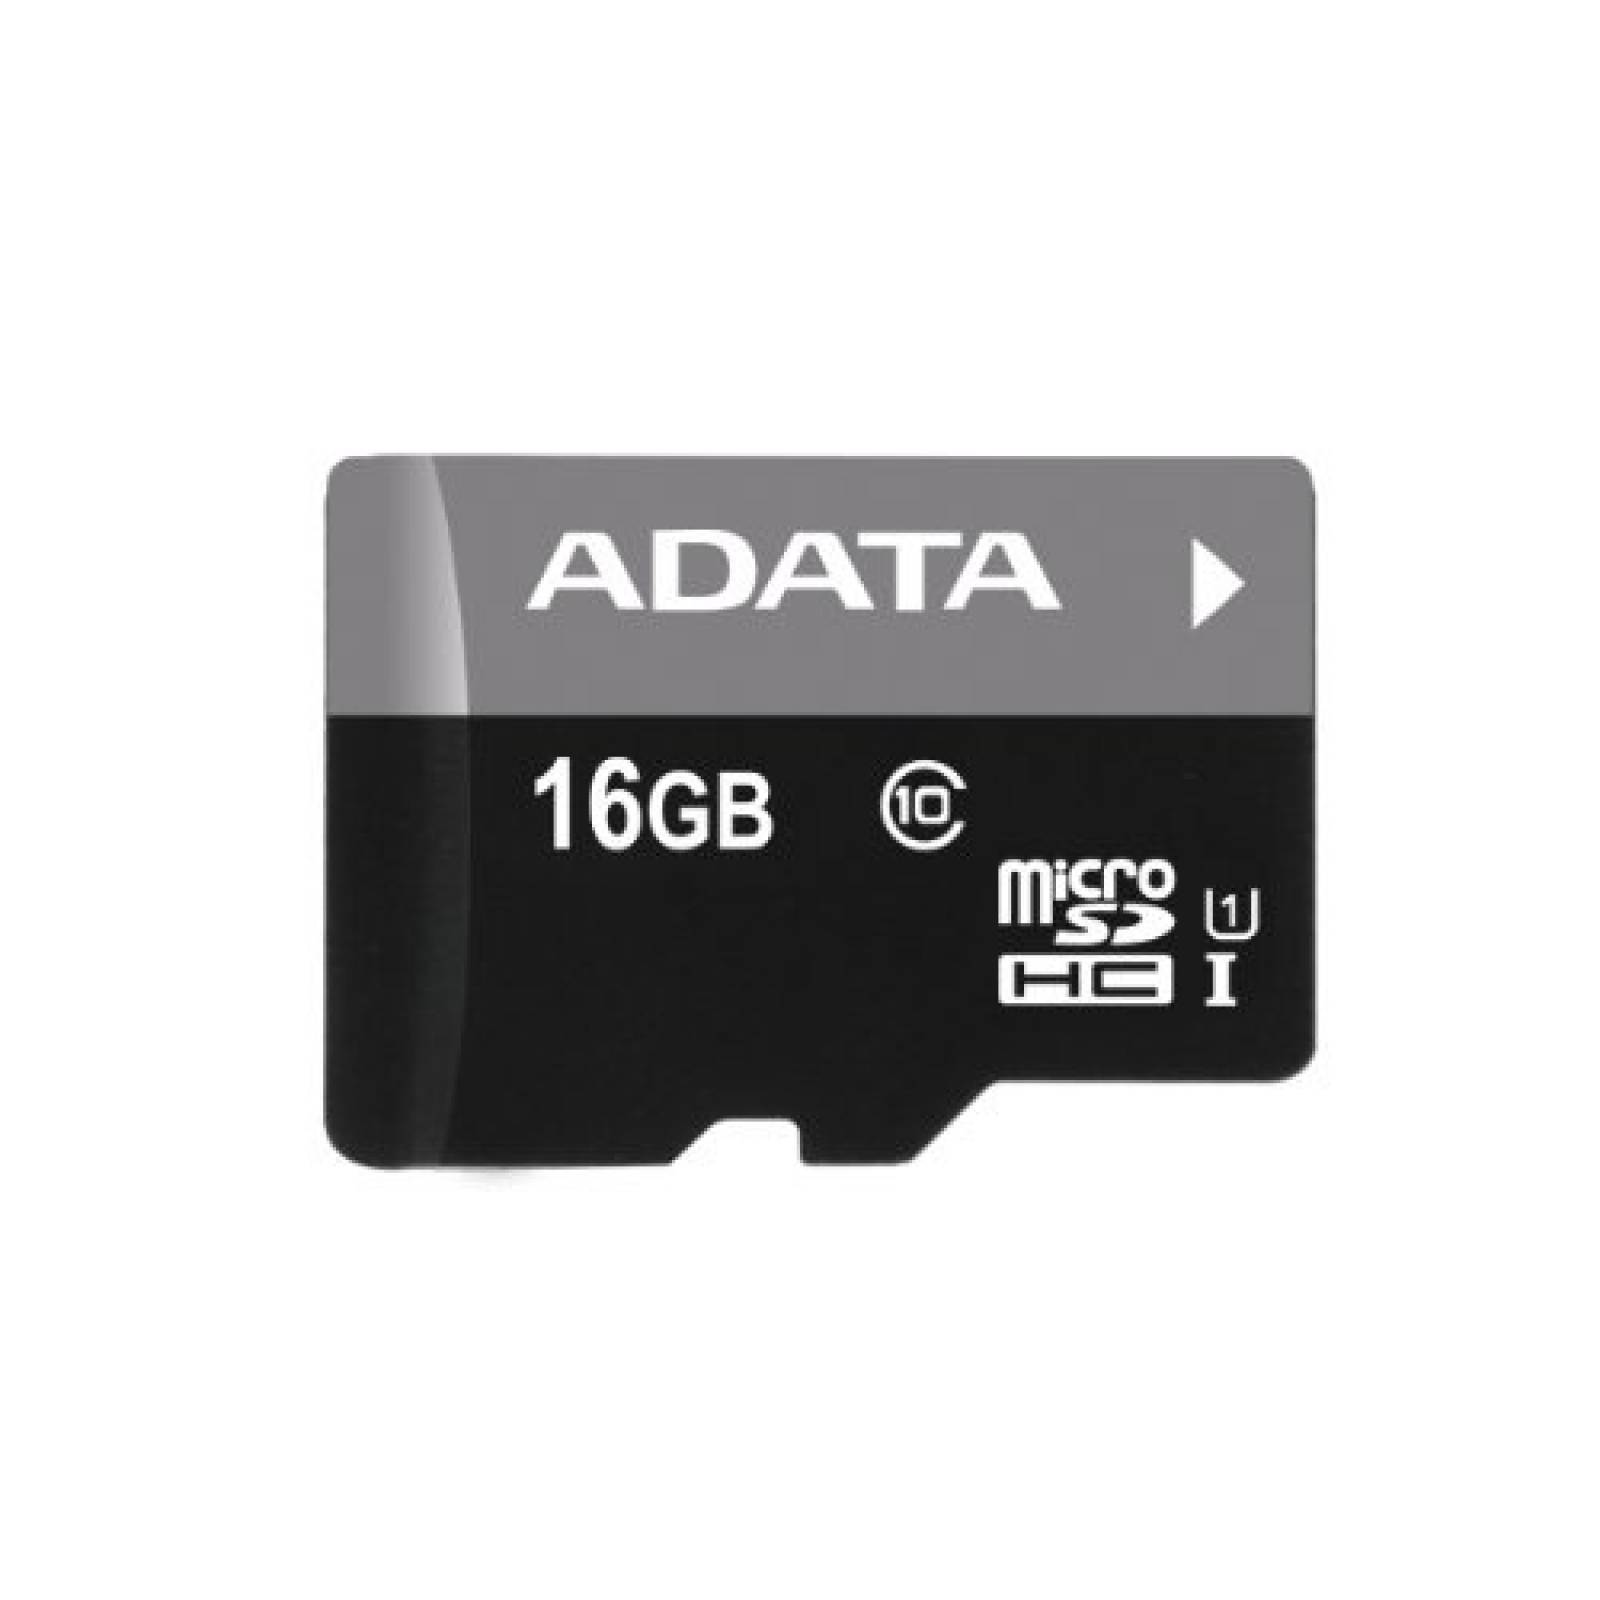 Memoria Flash Adata 16GB MicroSDHC Clase 10 C/Adaptador